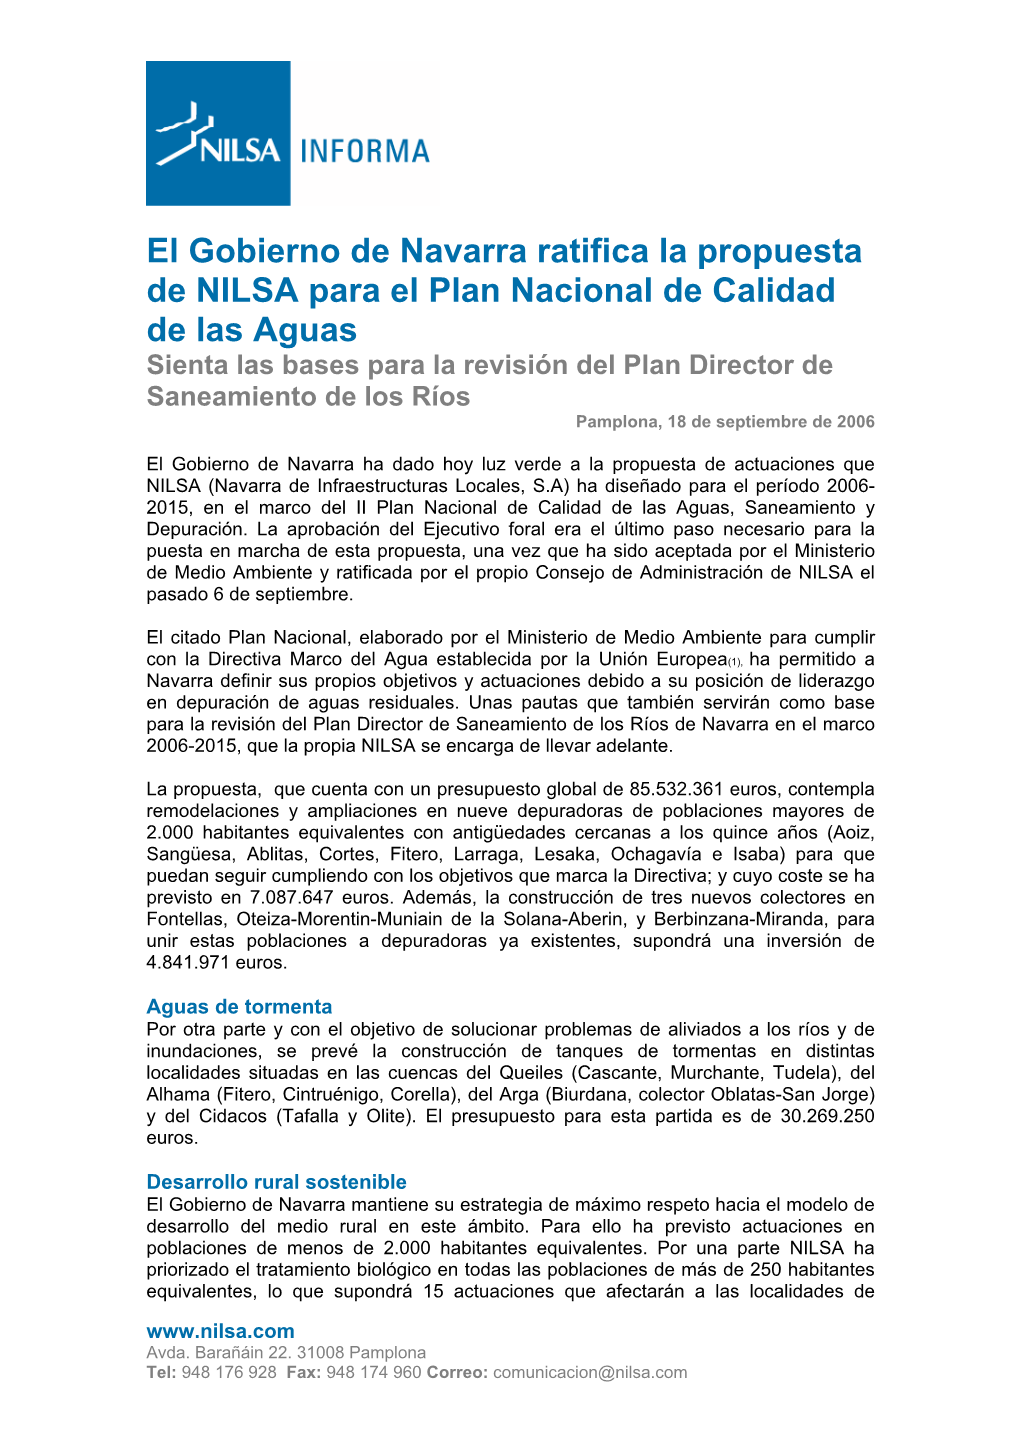 El Gobierno De Navarra Ratifica La Propuesta De NILSA Para El Plan